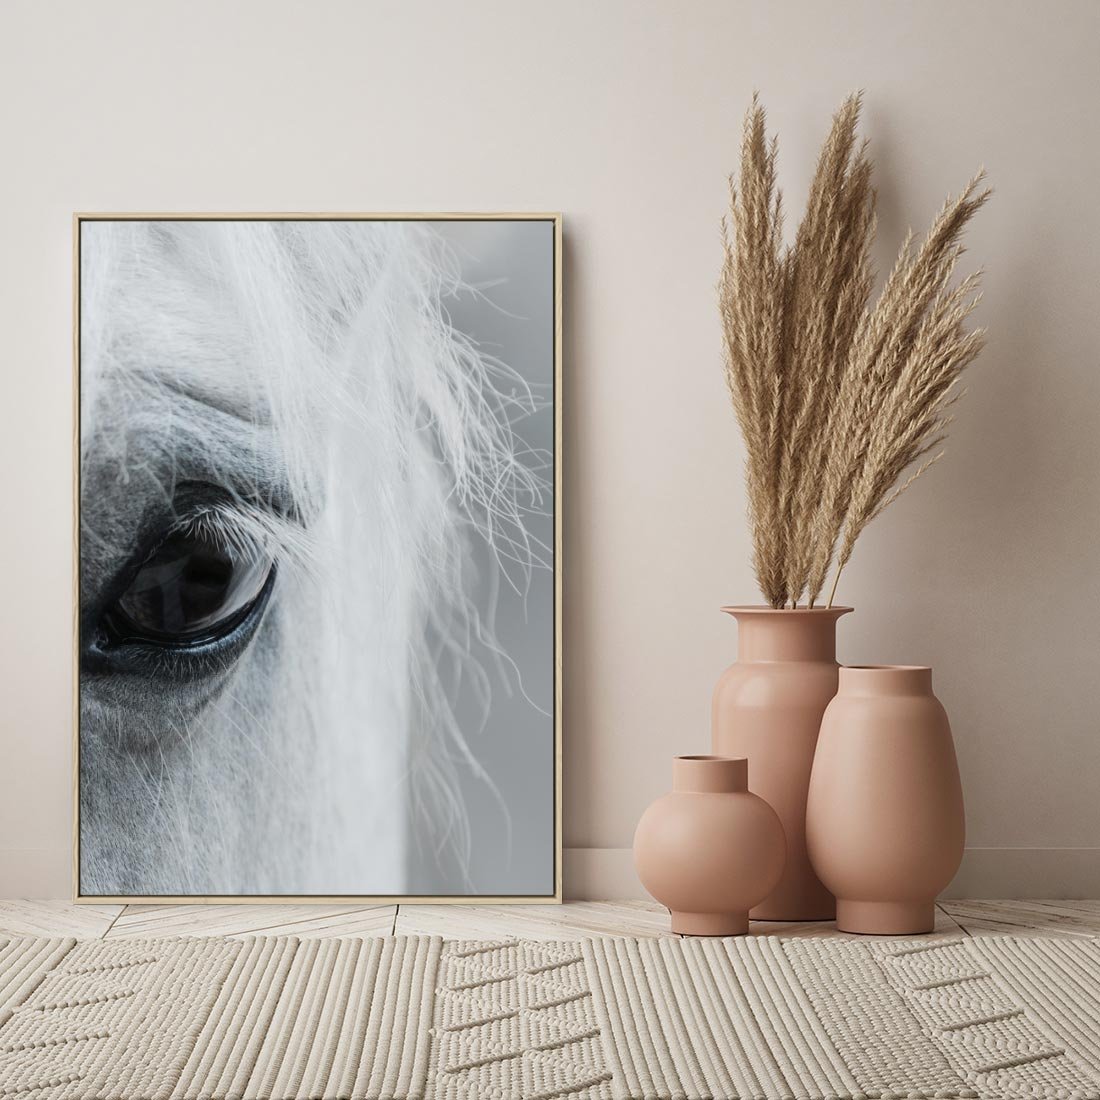 Obraz w ramie 50x70 - Oko Mocy - czarno białe zdjęcie, zbliżenie makro na oko konia - rama drewno